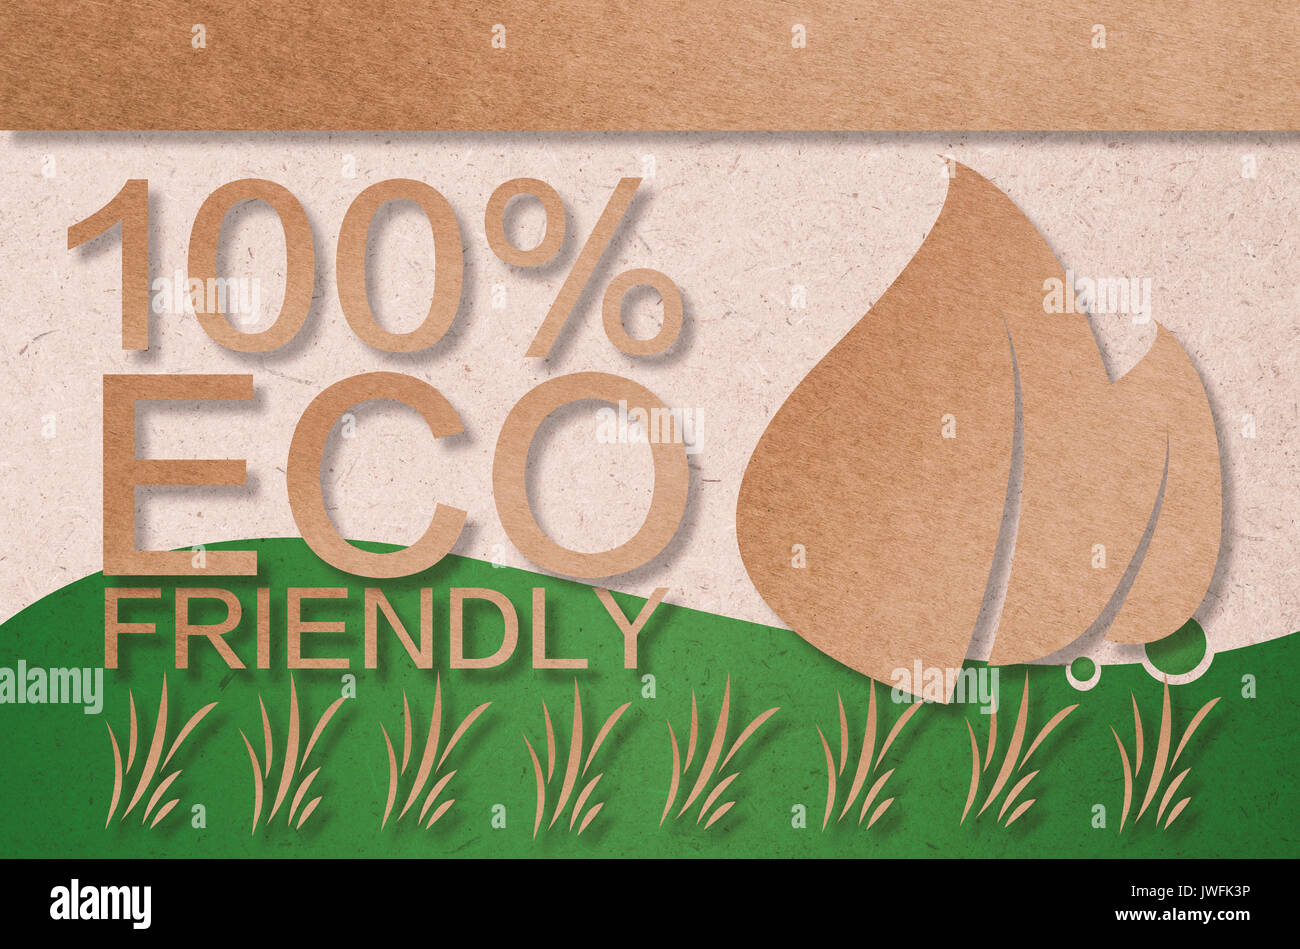 100 % eco friendly concept ou ecology concept Banque D'Images